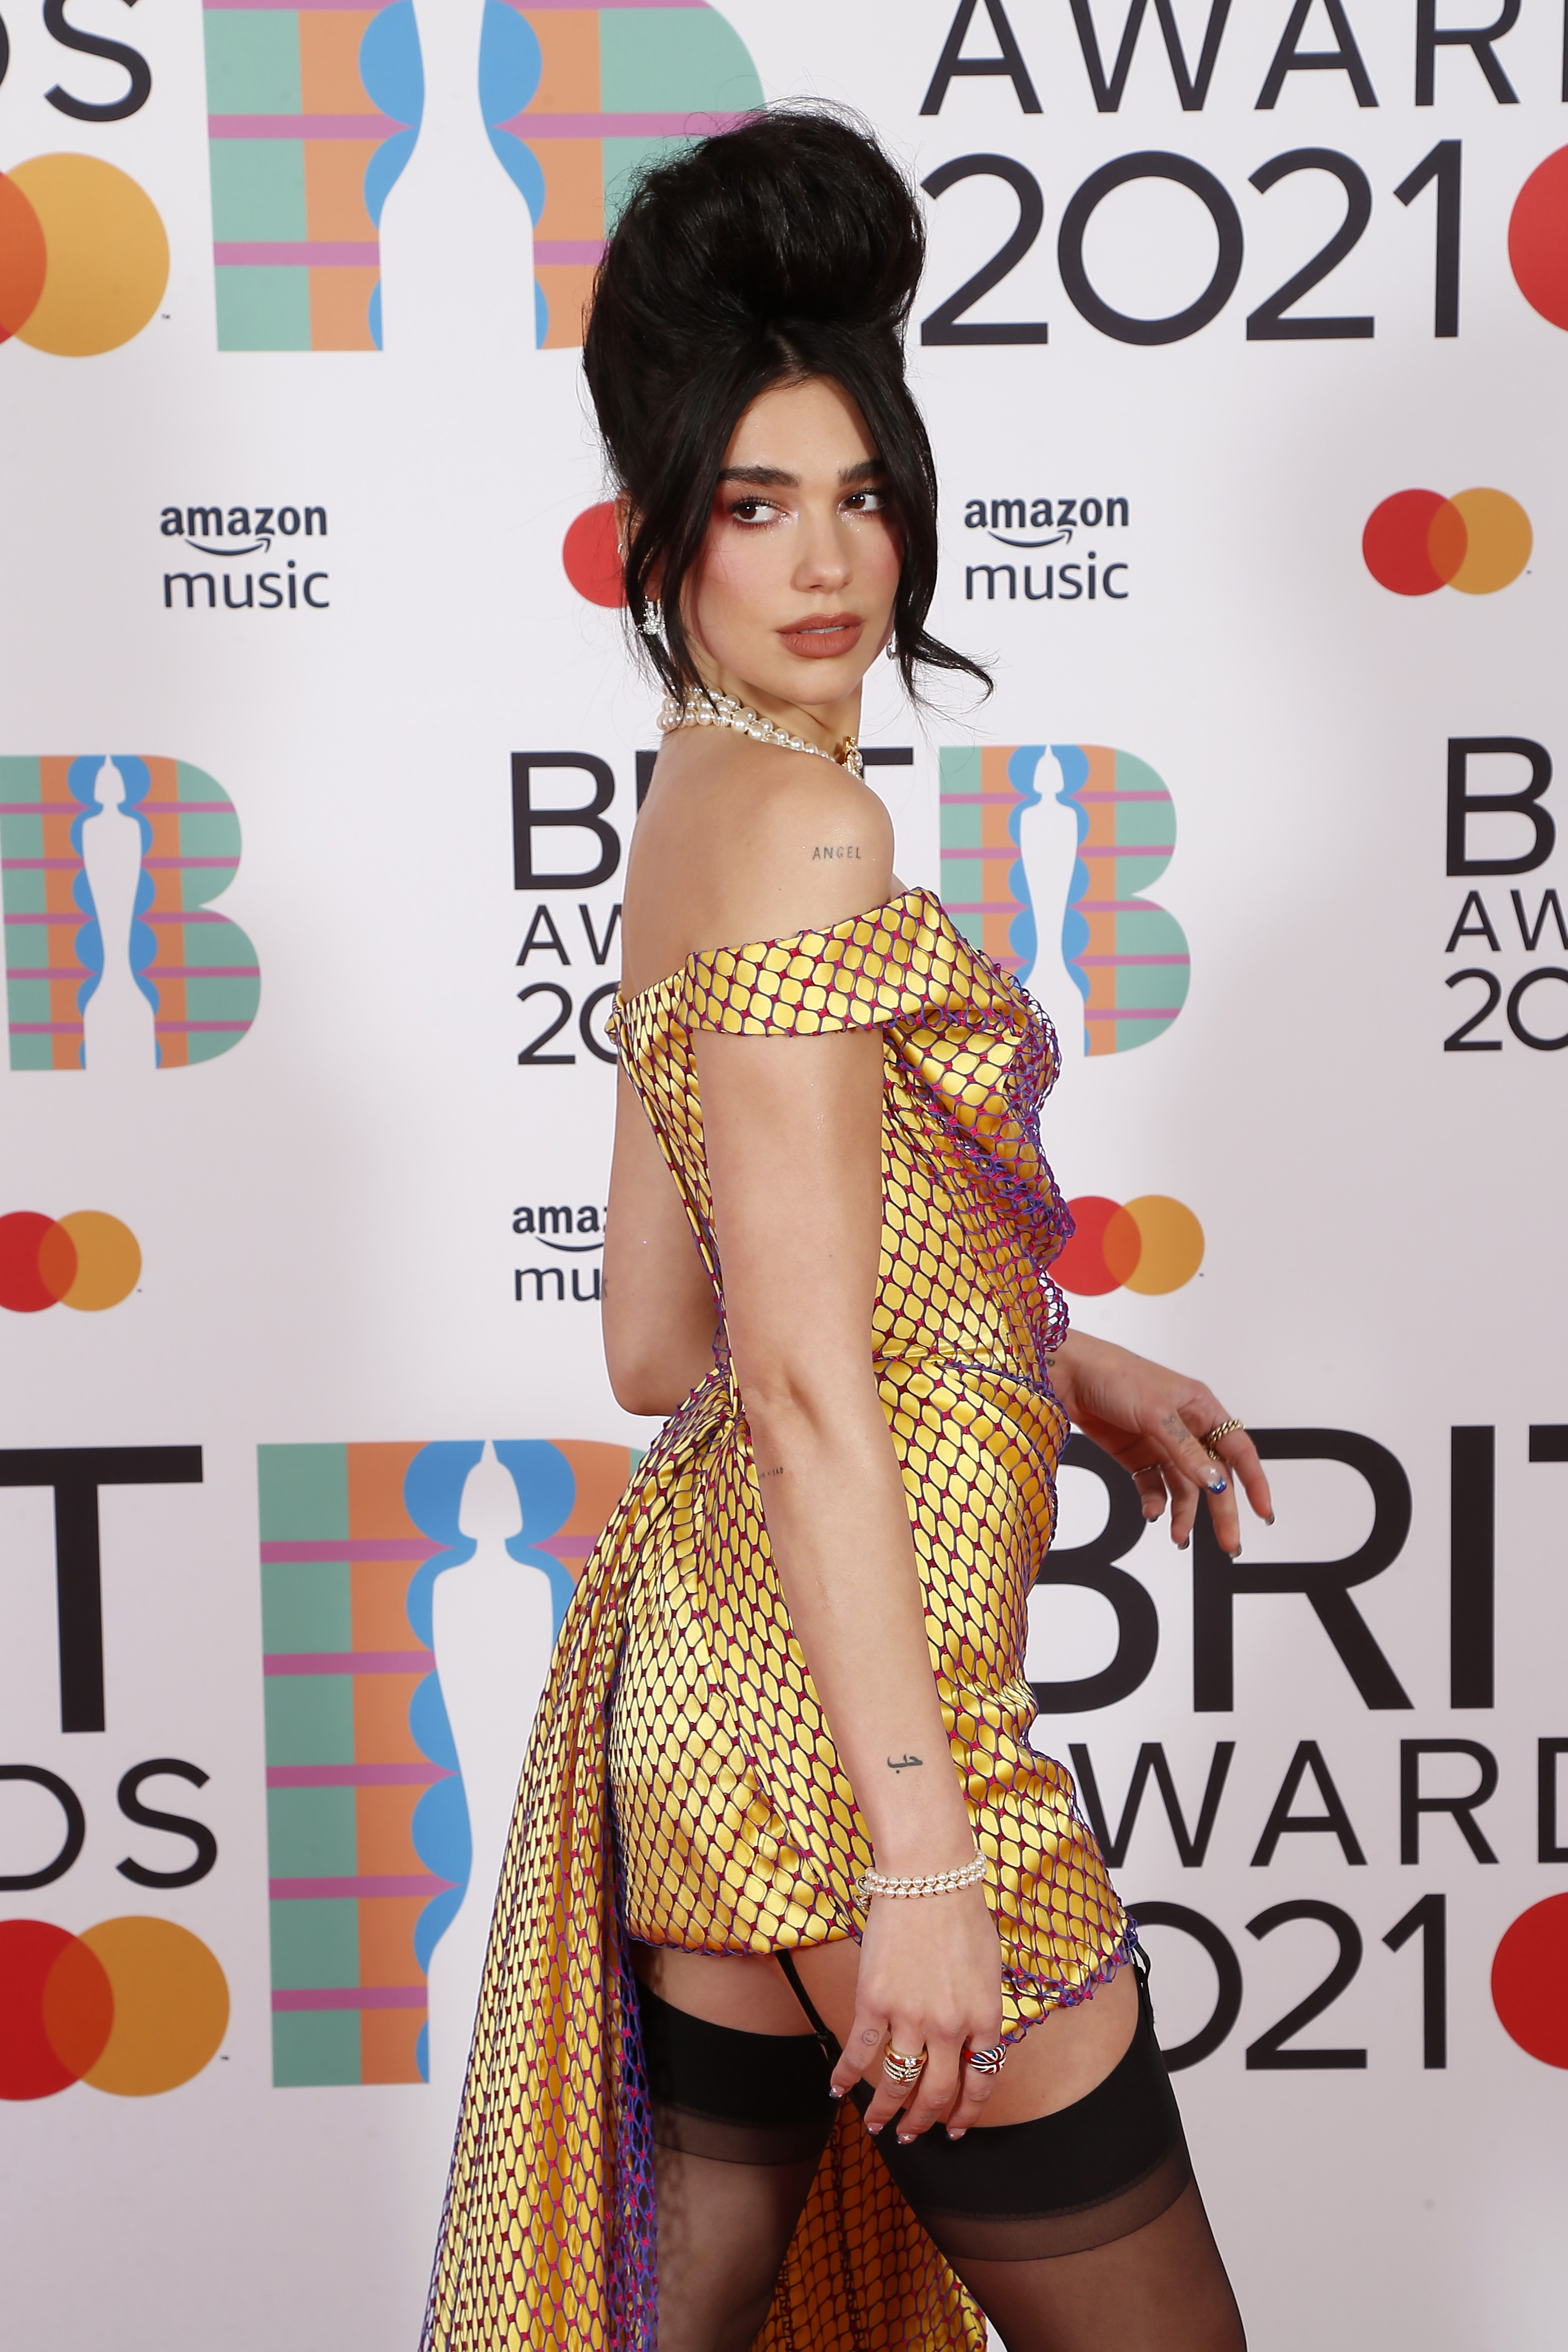 Dua Lipa no BRIT Awards 2021. Ela está usando um vestido dourado curto com uma cauda lateral e uma renda de furinhos roxos por cima. Na foto, ela está virada para um dos lados, olhando por cima de um dos ombros. Seu cabelo está preso em um coque volumoso.